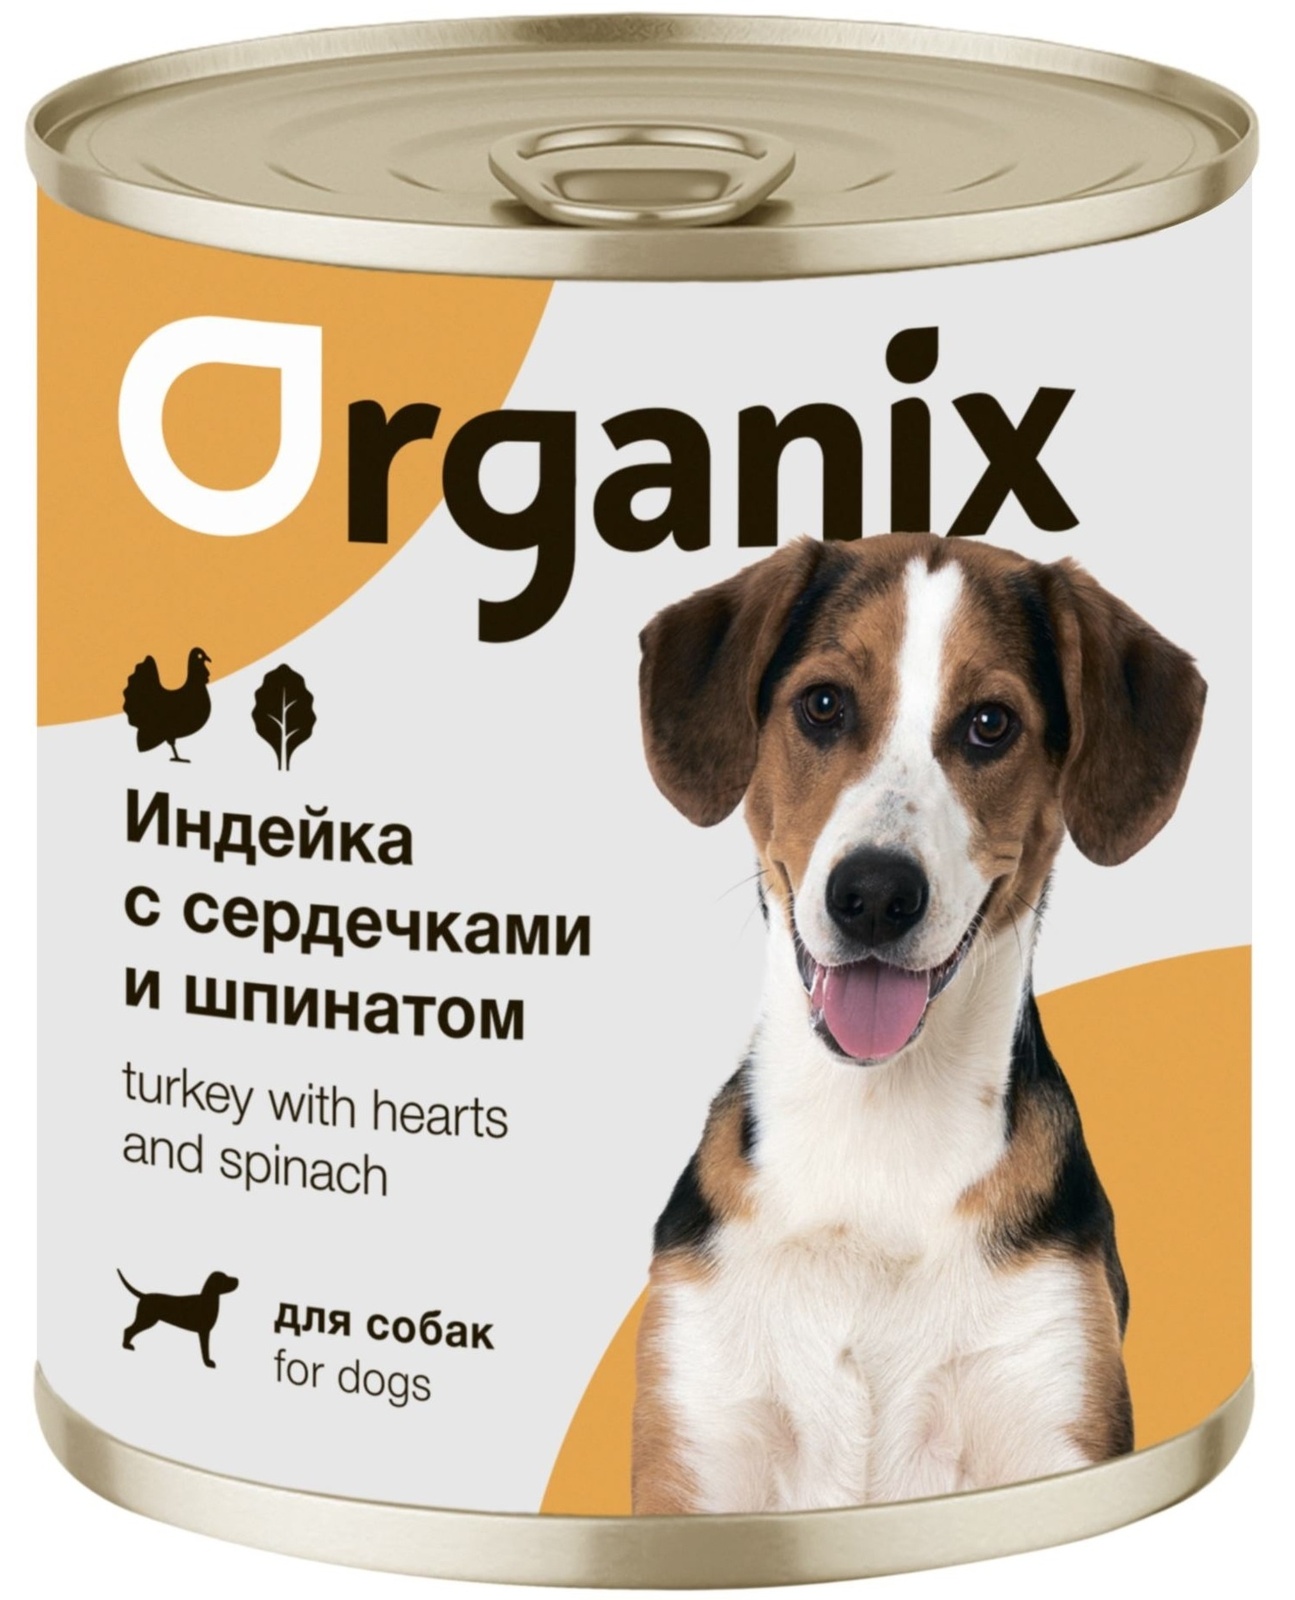 Organix консервы Organix консервы для собак Индейка с сердечками и шпинатом (750 г) organix консервы organix консервы для собак индейка с сердечками и шпинатом 750 г